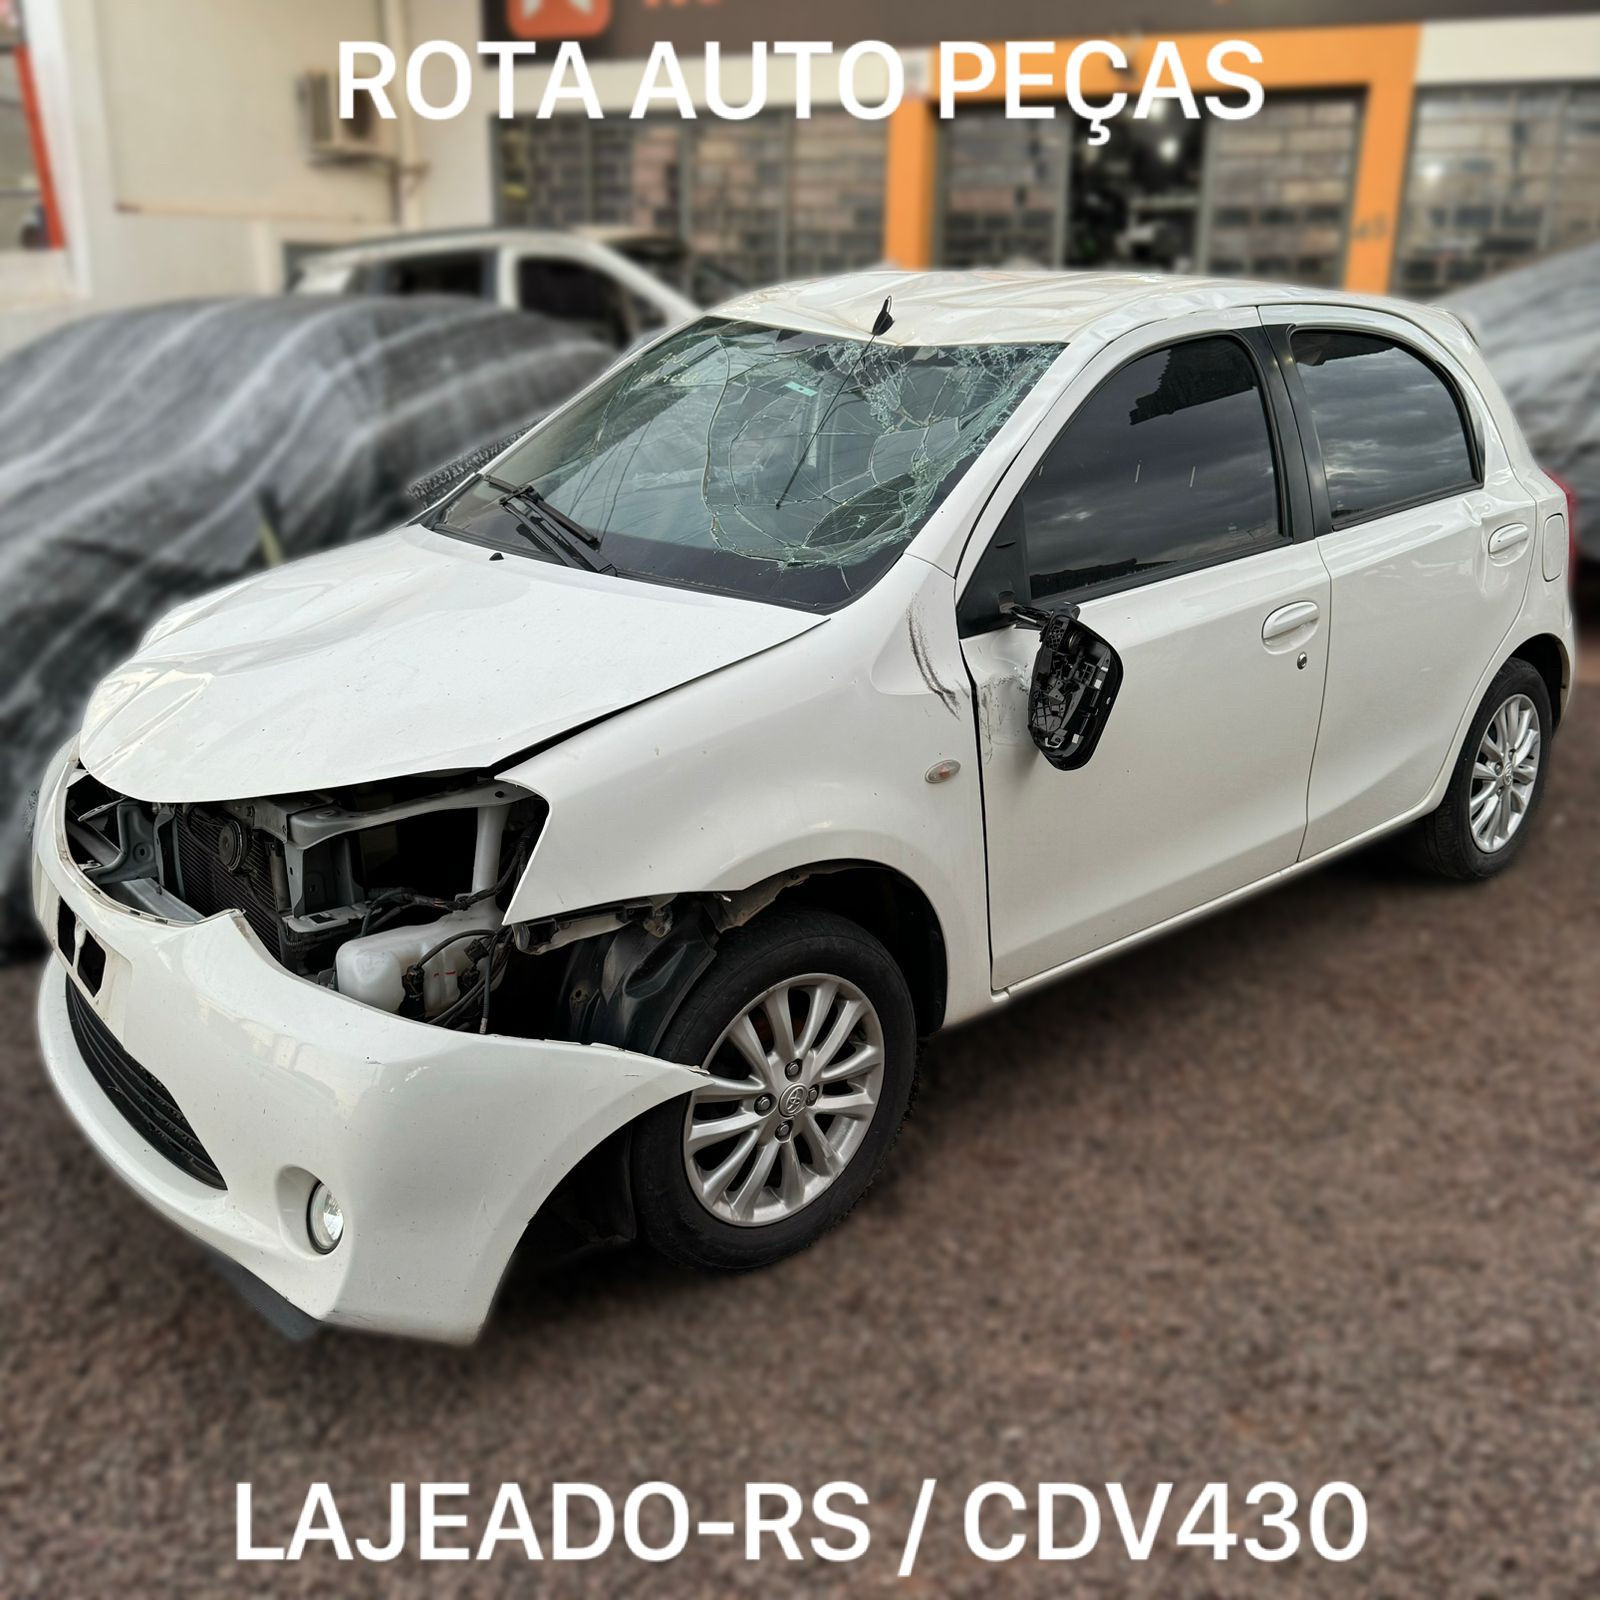 Sucata Toyota Etios Xls 2013 Retirada De Peças